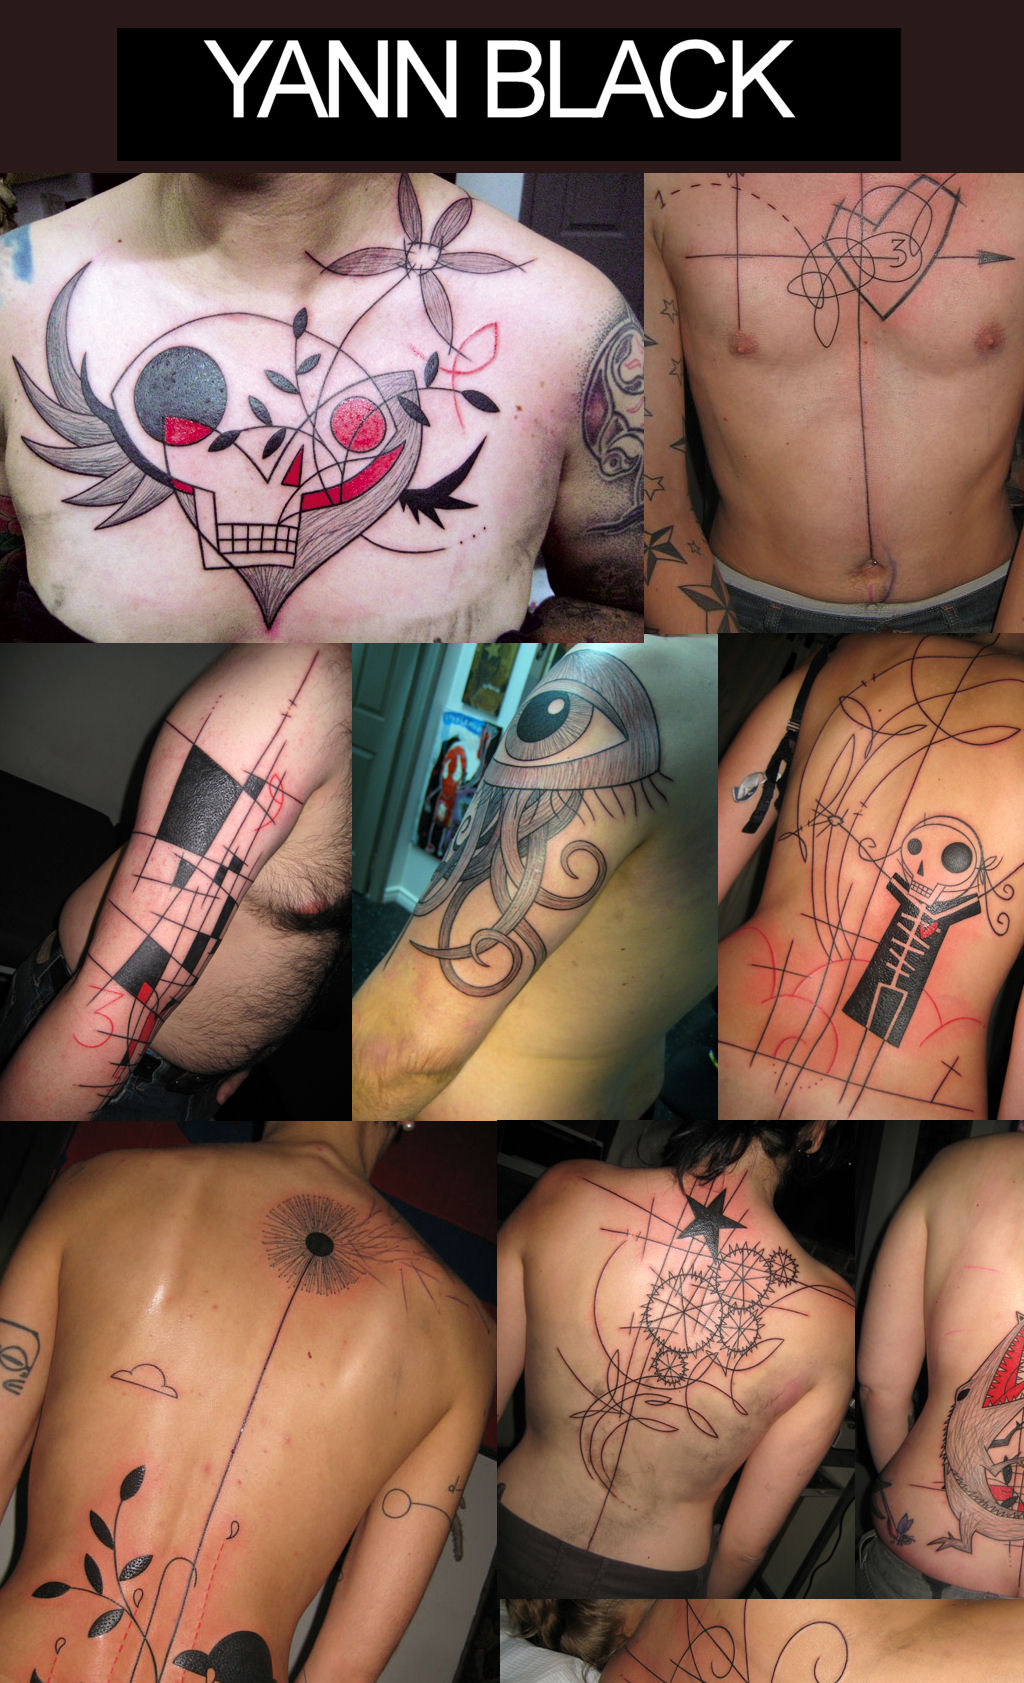 Os 15 tatuadores mais geniais do mundo